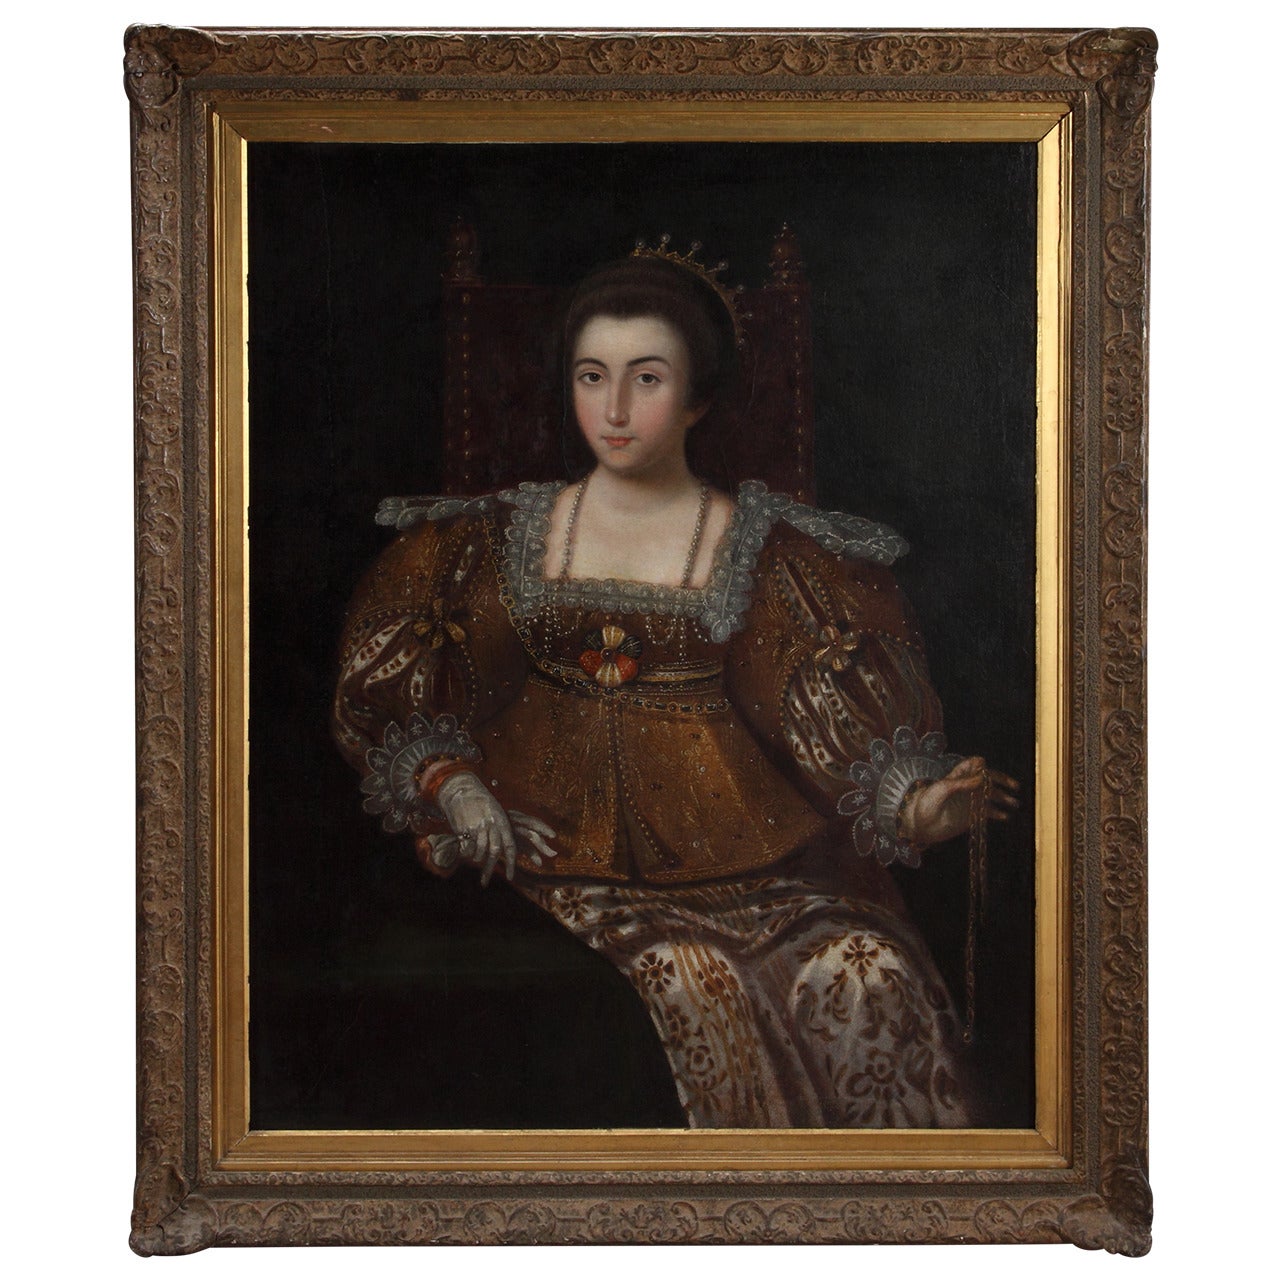 Huile sur toile espagnole du 17ème siècle représentant une reine